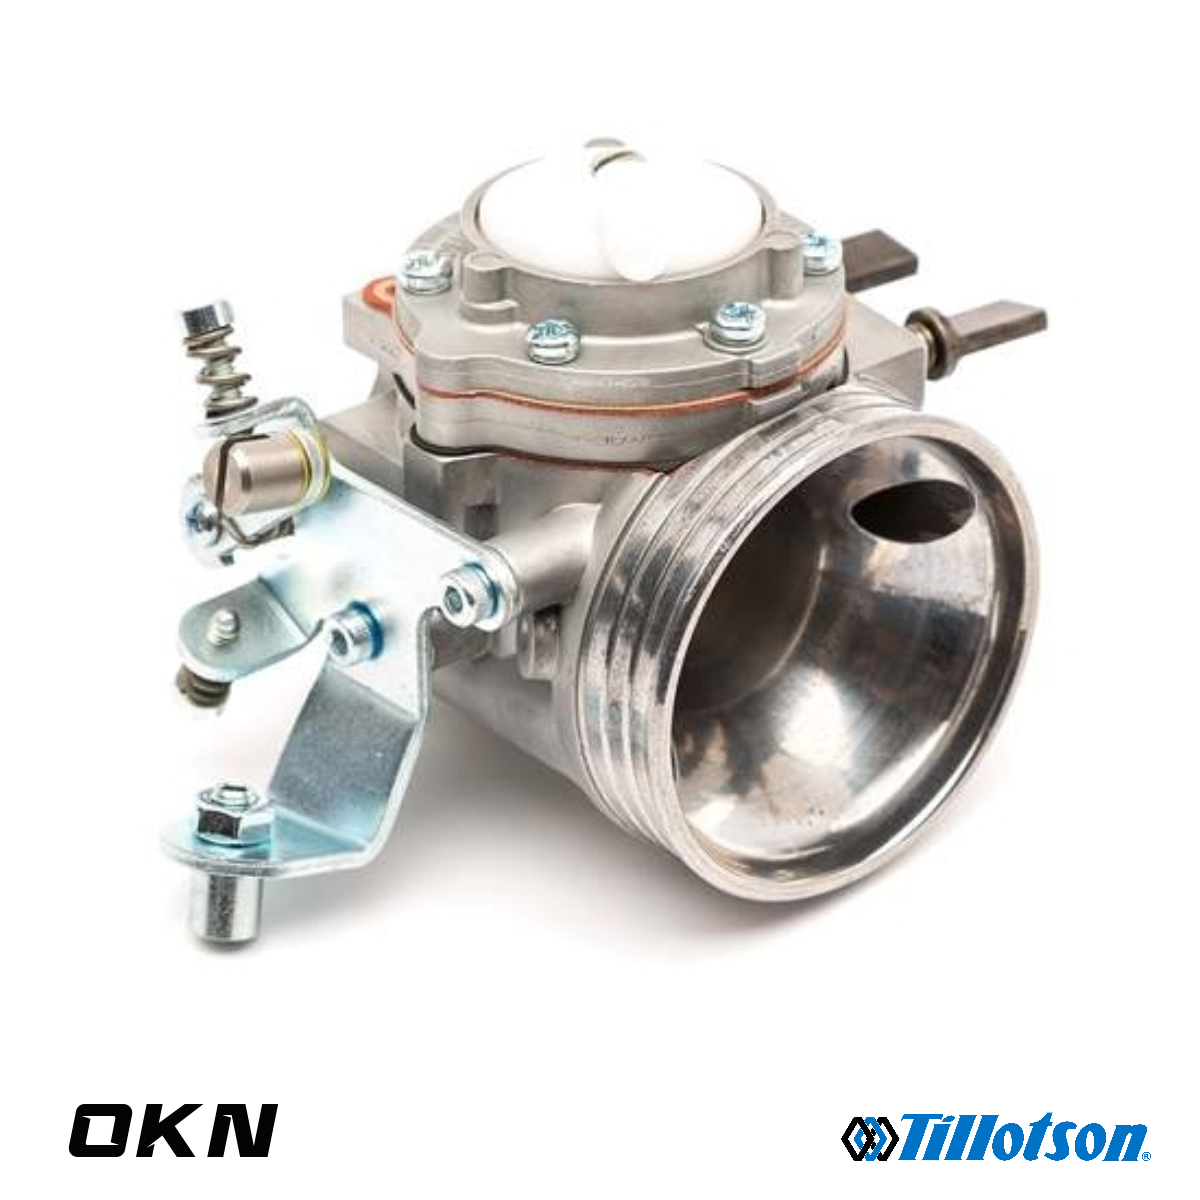 Carburatore Tillotson HW-49A OKN